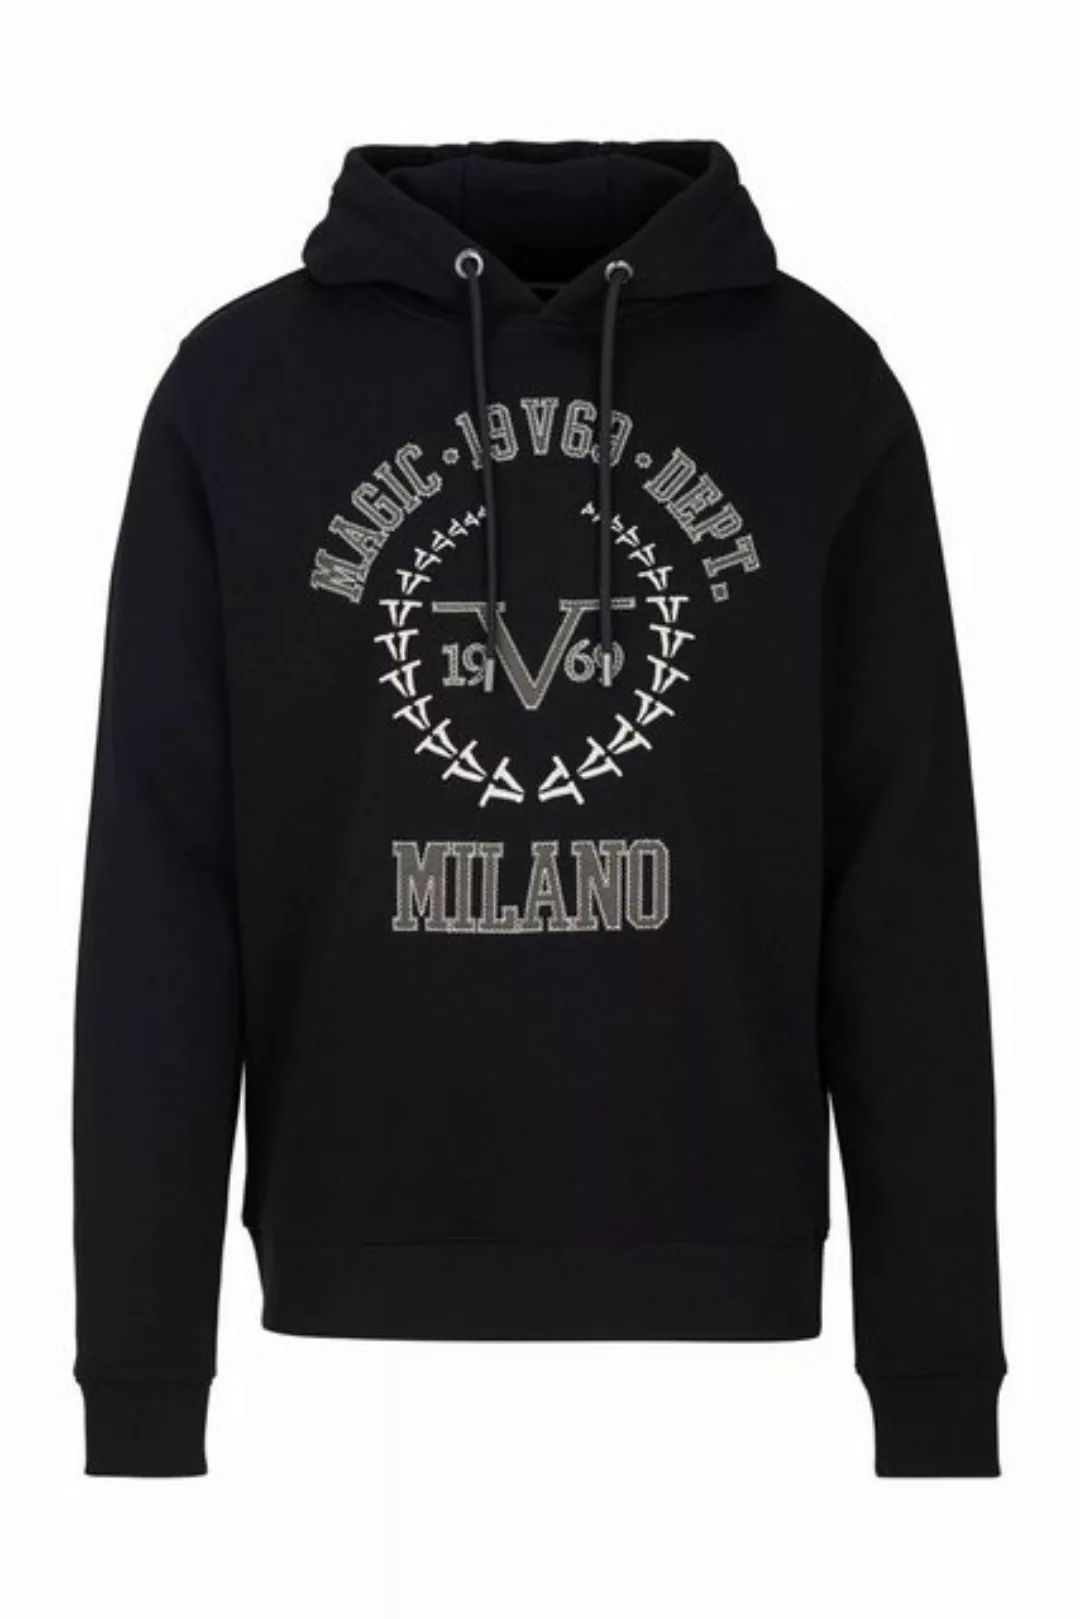 19V69 Italia by Versace Sweatshirt by Versace Sportivo SRL - Pio günstig online kaufen